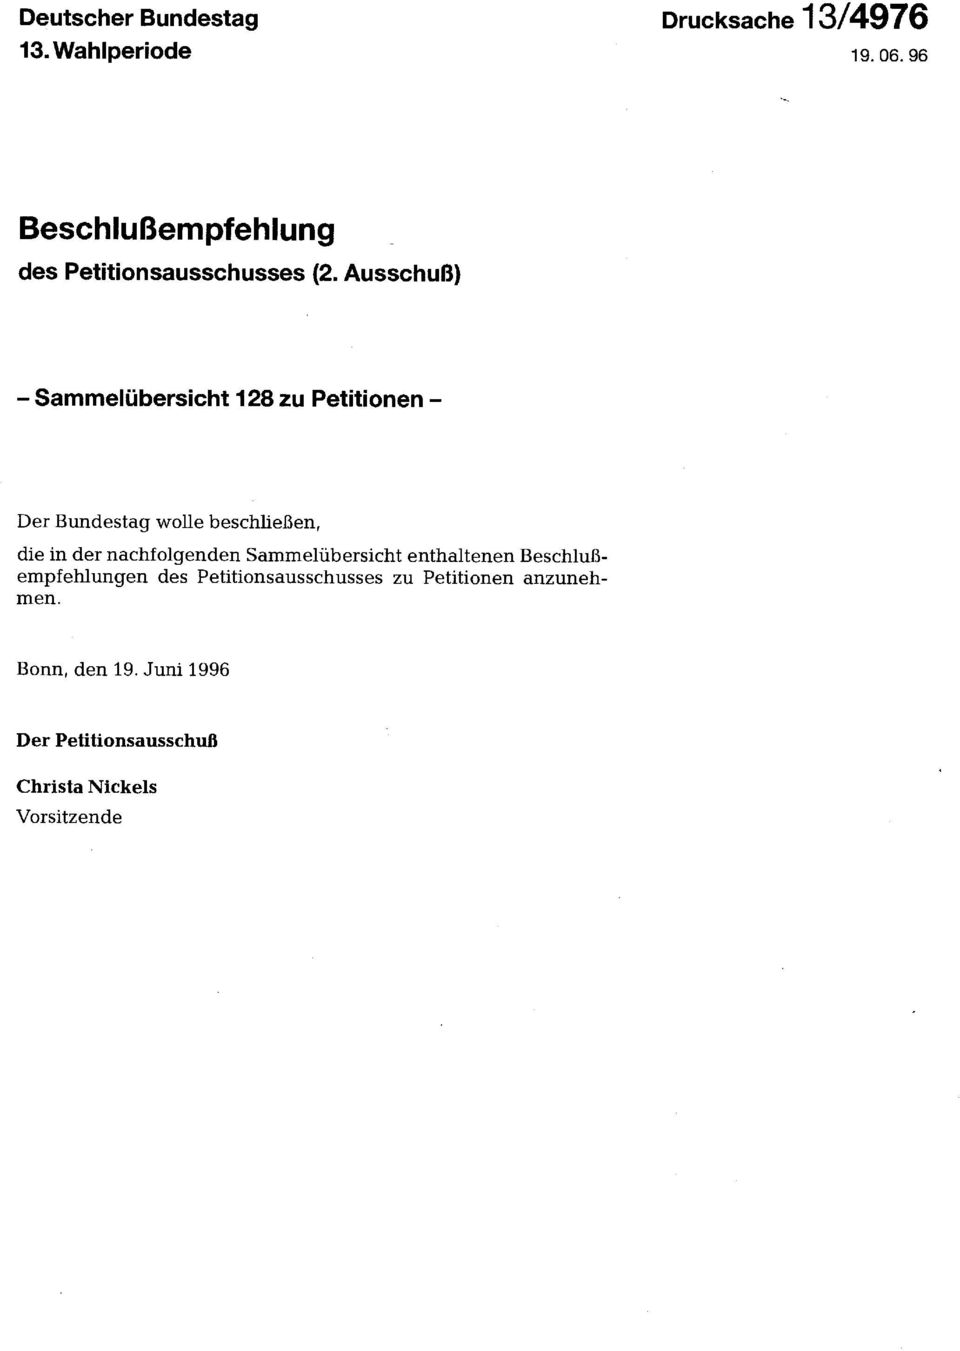 Ausschuß) - Sammelübersicht 128 zu Petitionen Der Bundestag wolle beschließen, die in der